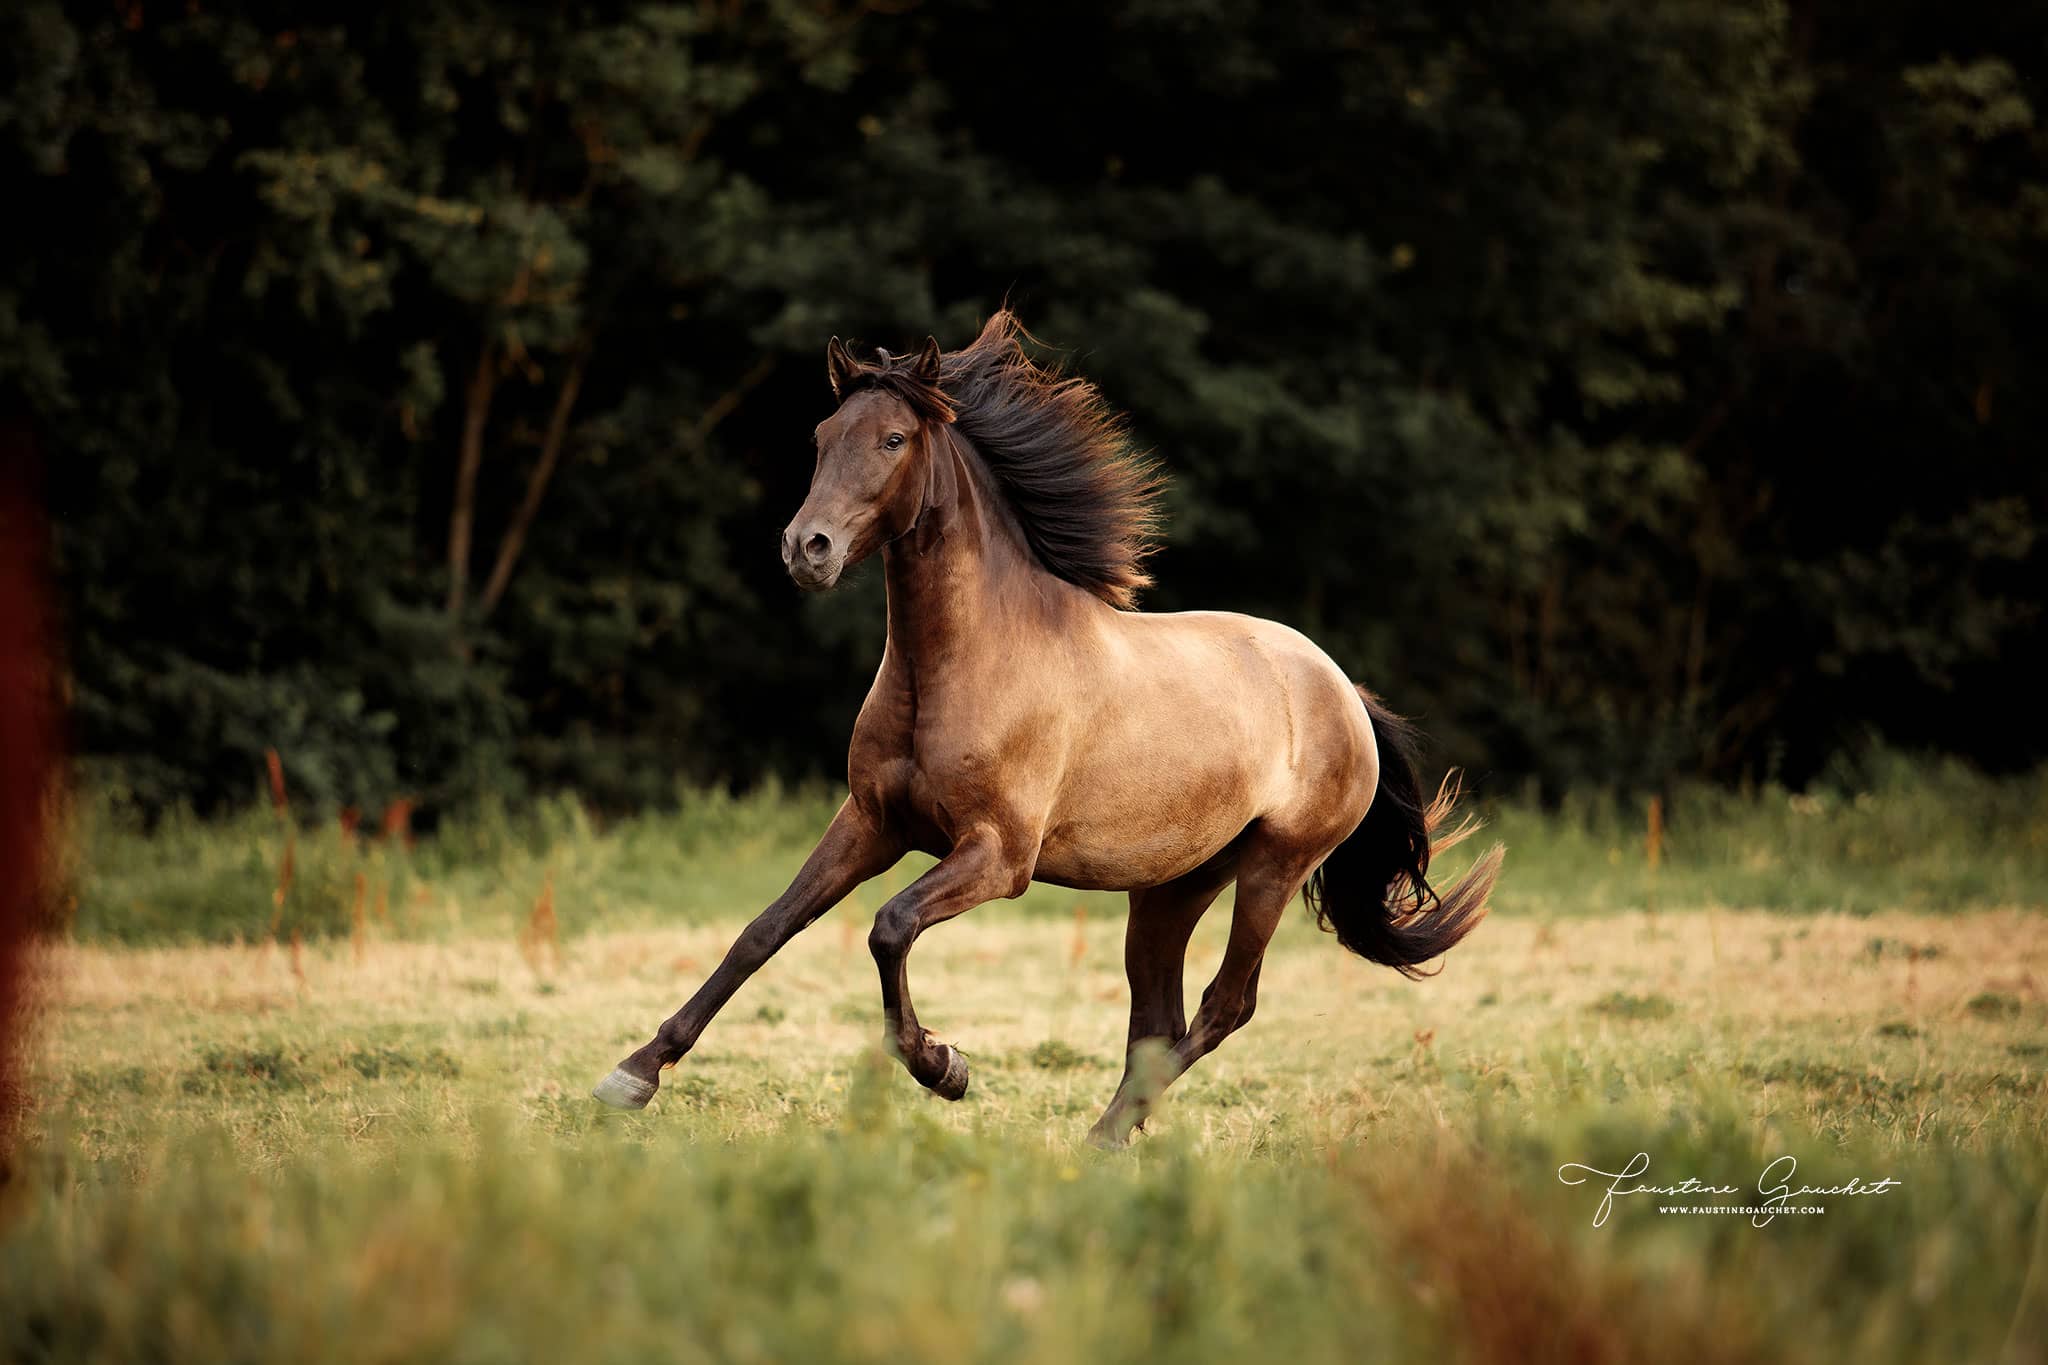 cheval lusitanien au galop dans un champ cours de photographie équine